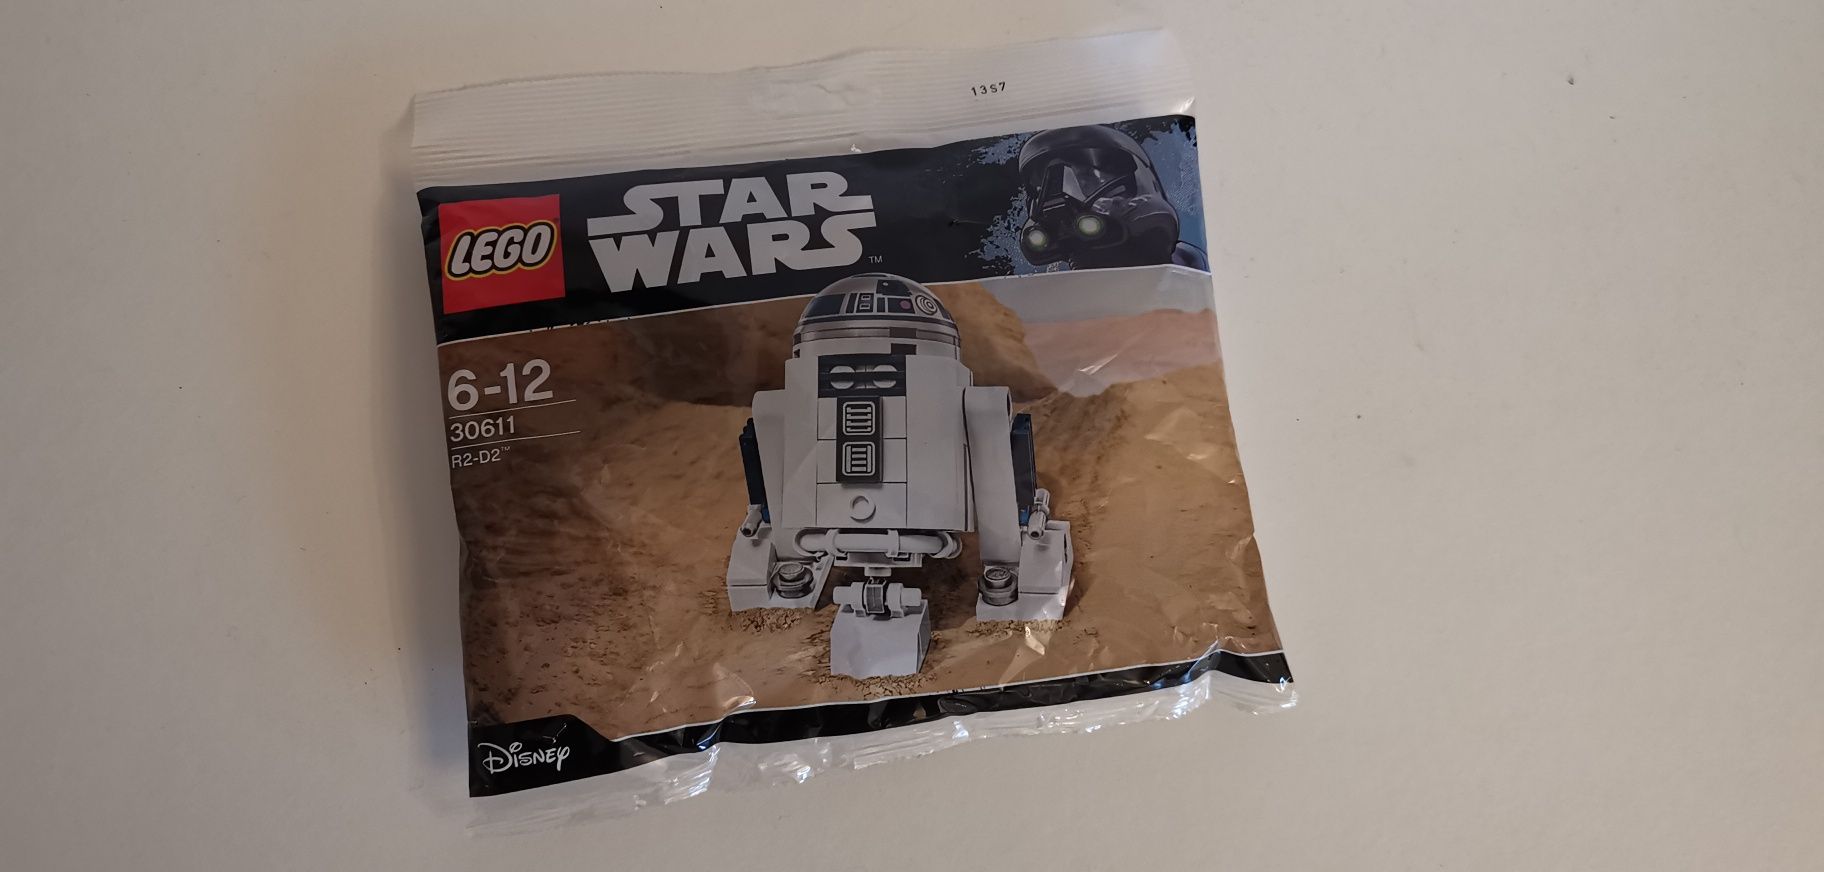 Lego 30611 R2-D2 Polybag